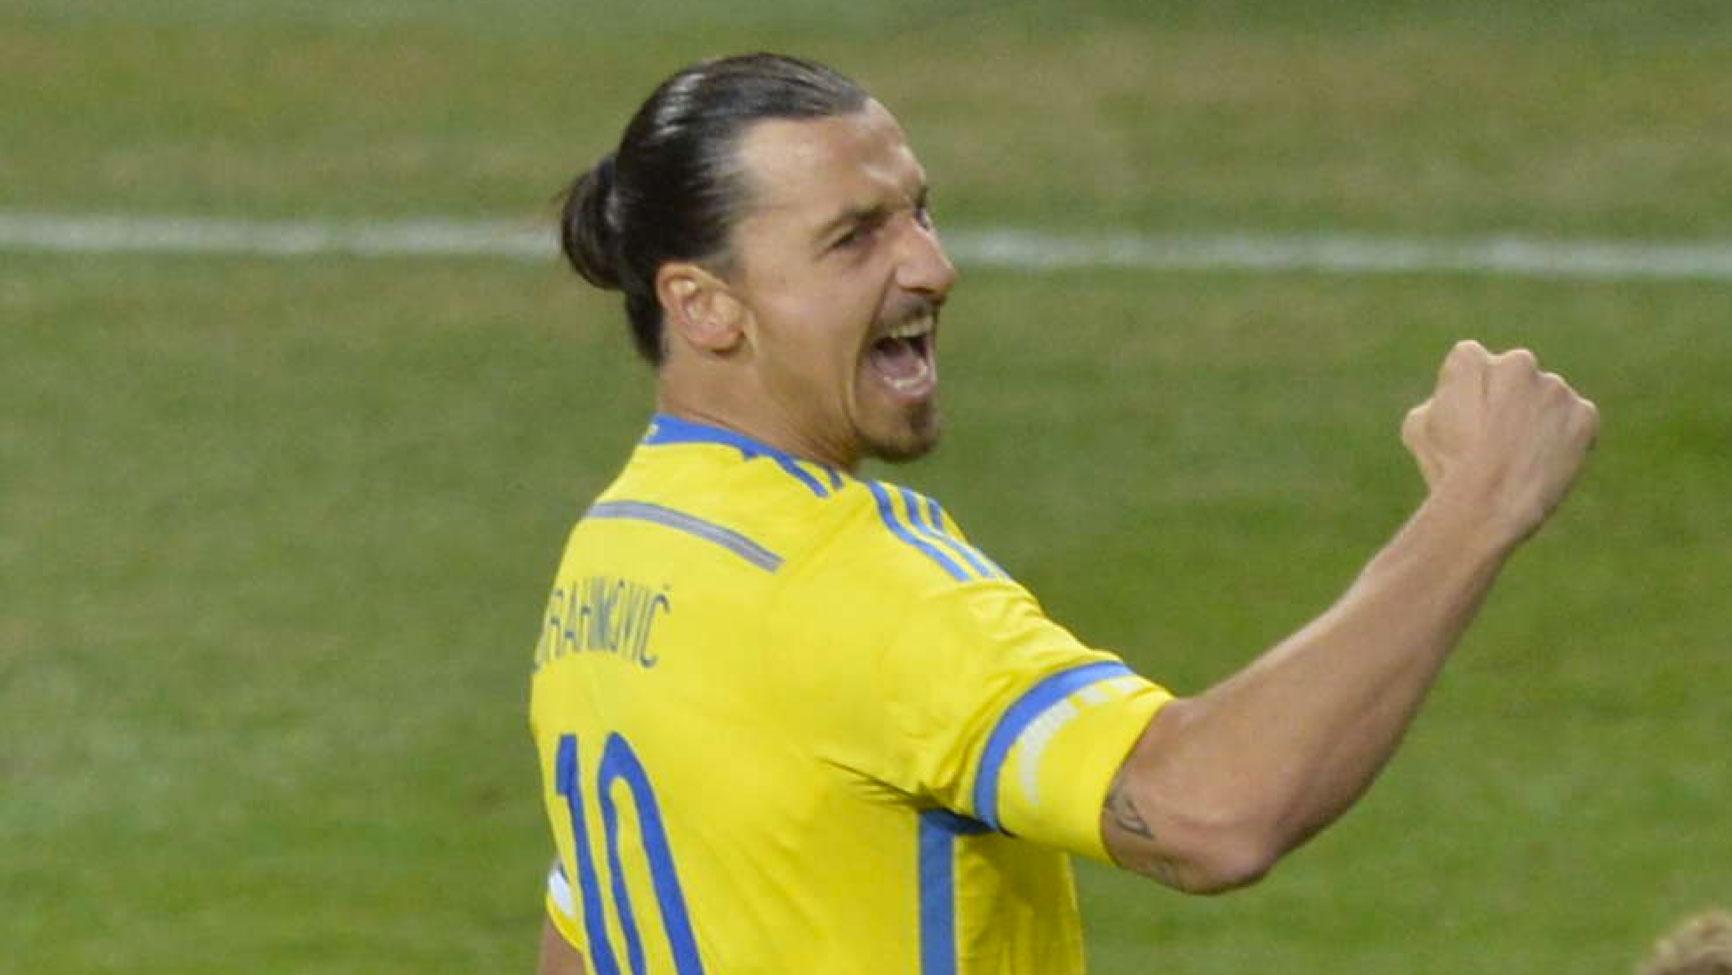 4 september 2014 I kvalgenrepet mot Estland satte Zlatan Sveriges 1-0-mål på volley redan i den tredje matchminuten. Tangerat målrekord...